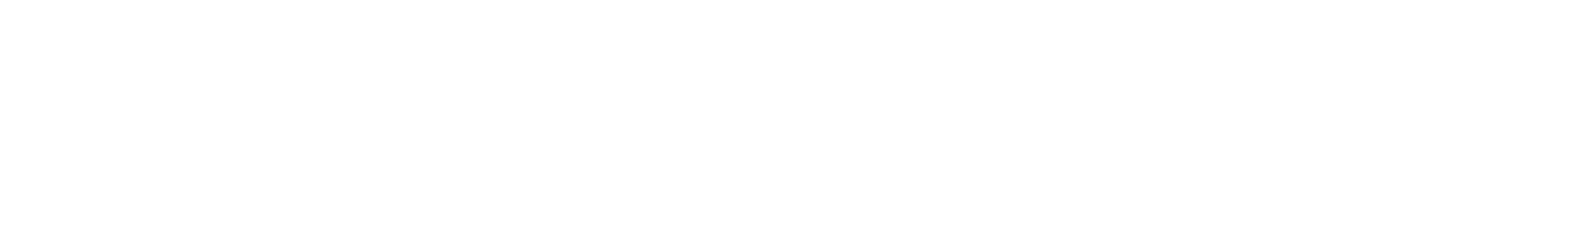 Aurubis logo large for dark backgrounds (transparent PNG)